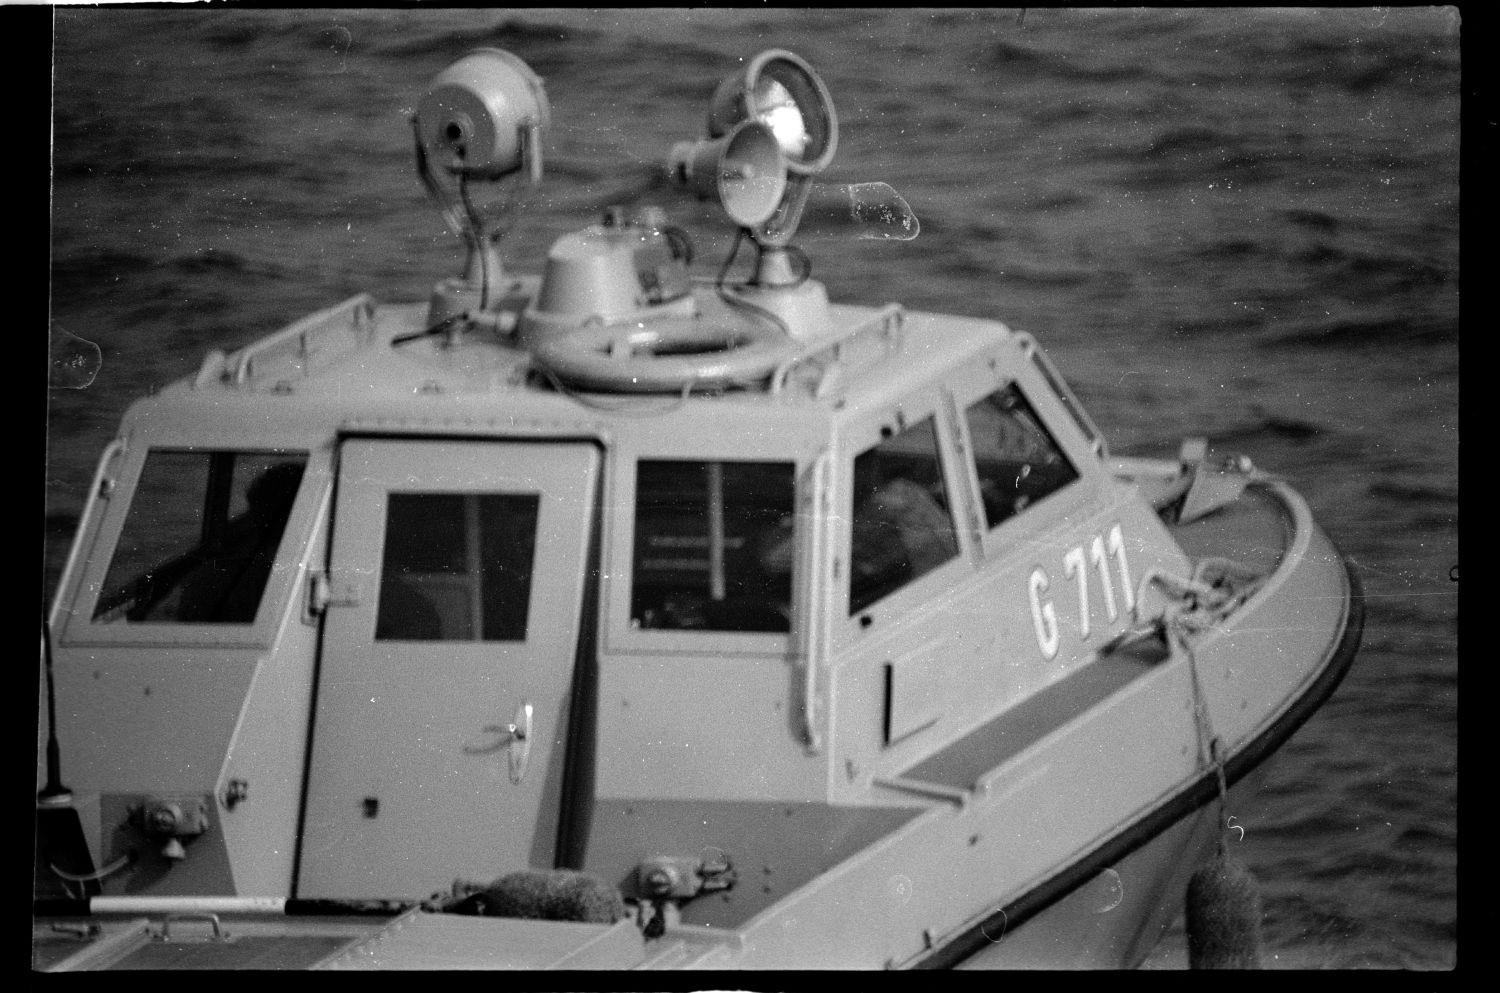 S/w-Fotografie: Patrouillenboot der Grenztruppen der DDR auf der Havel zwischen West-Berlin und Potsdam